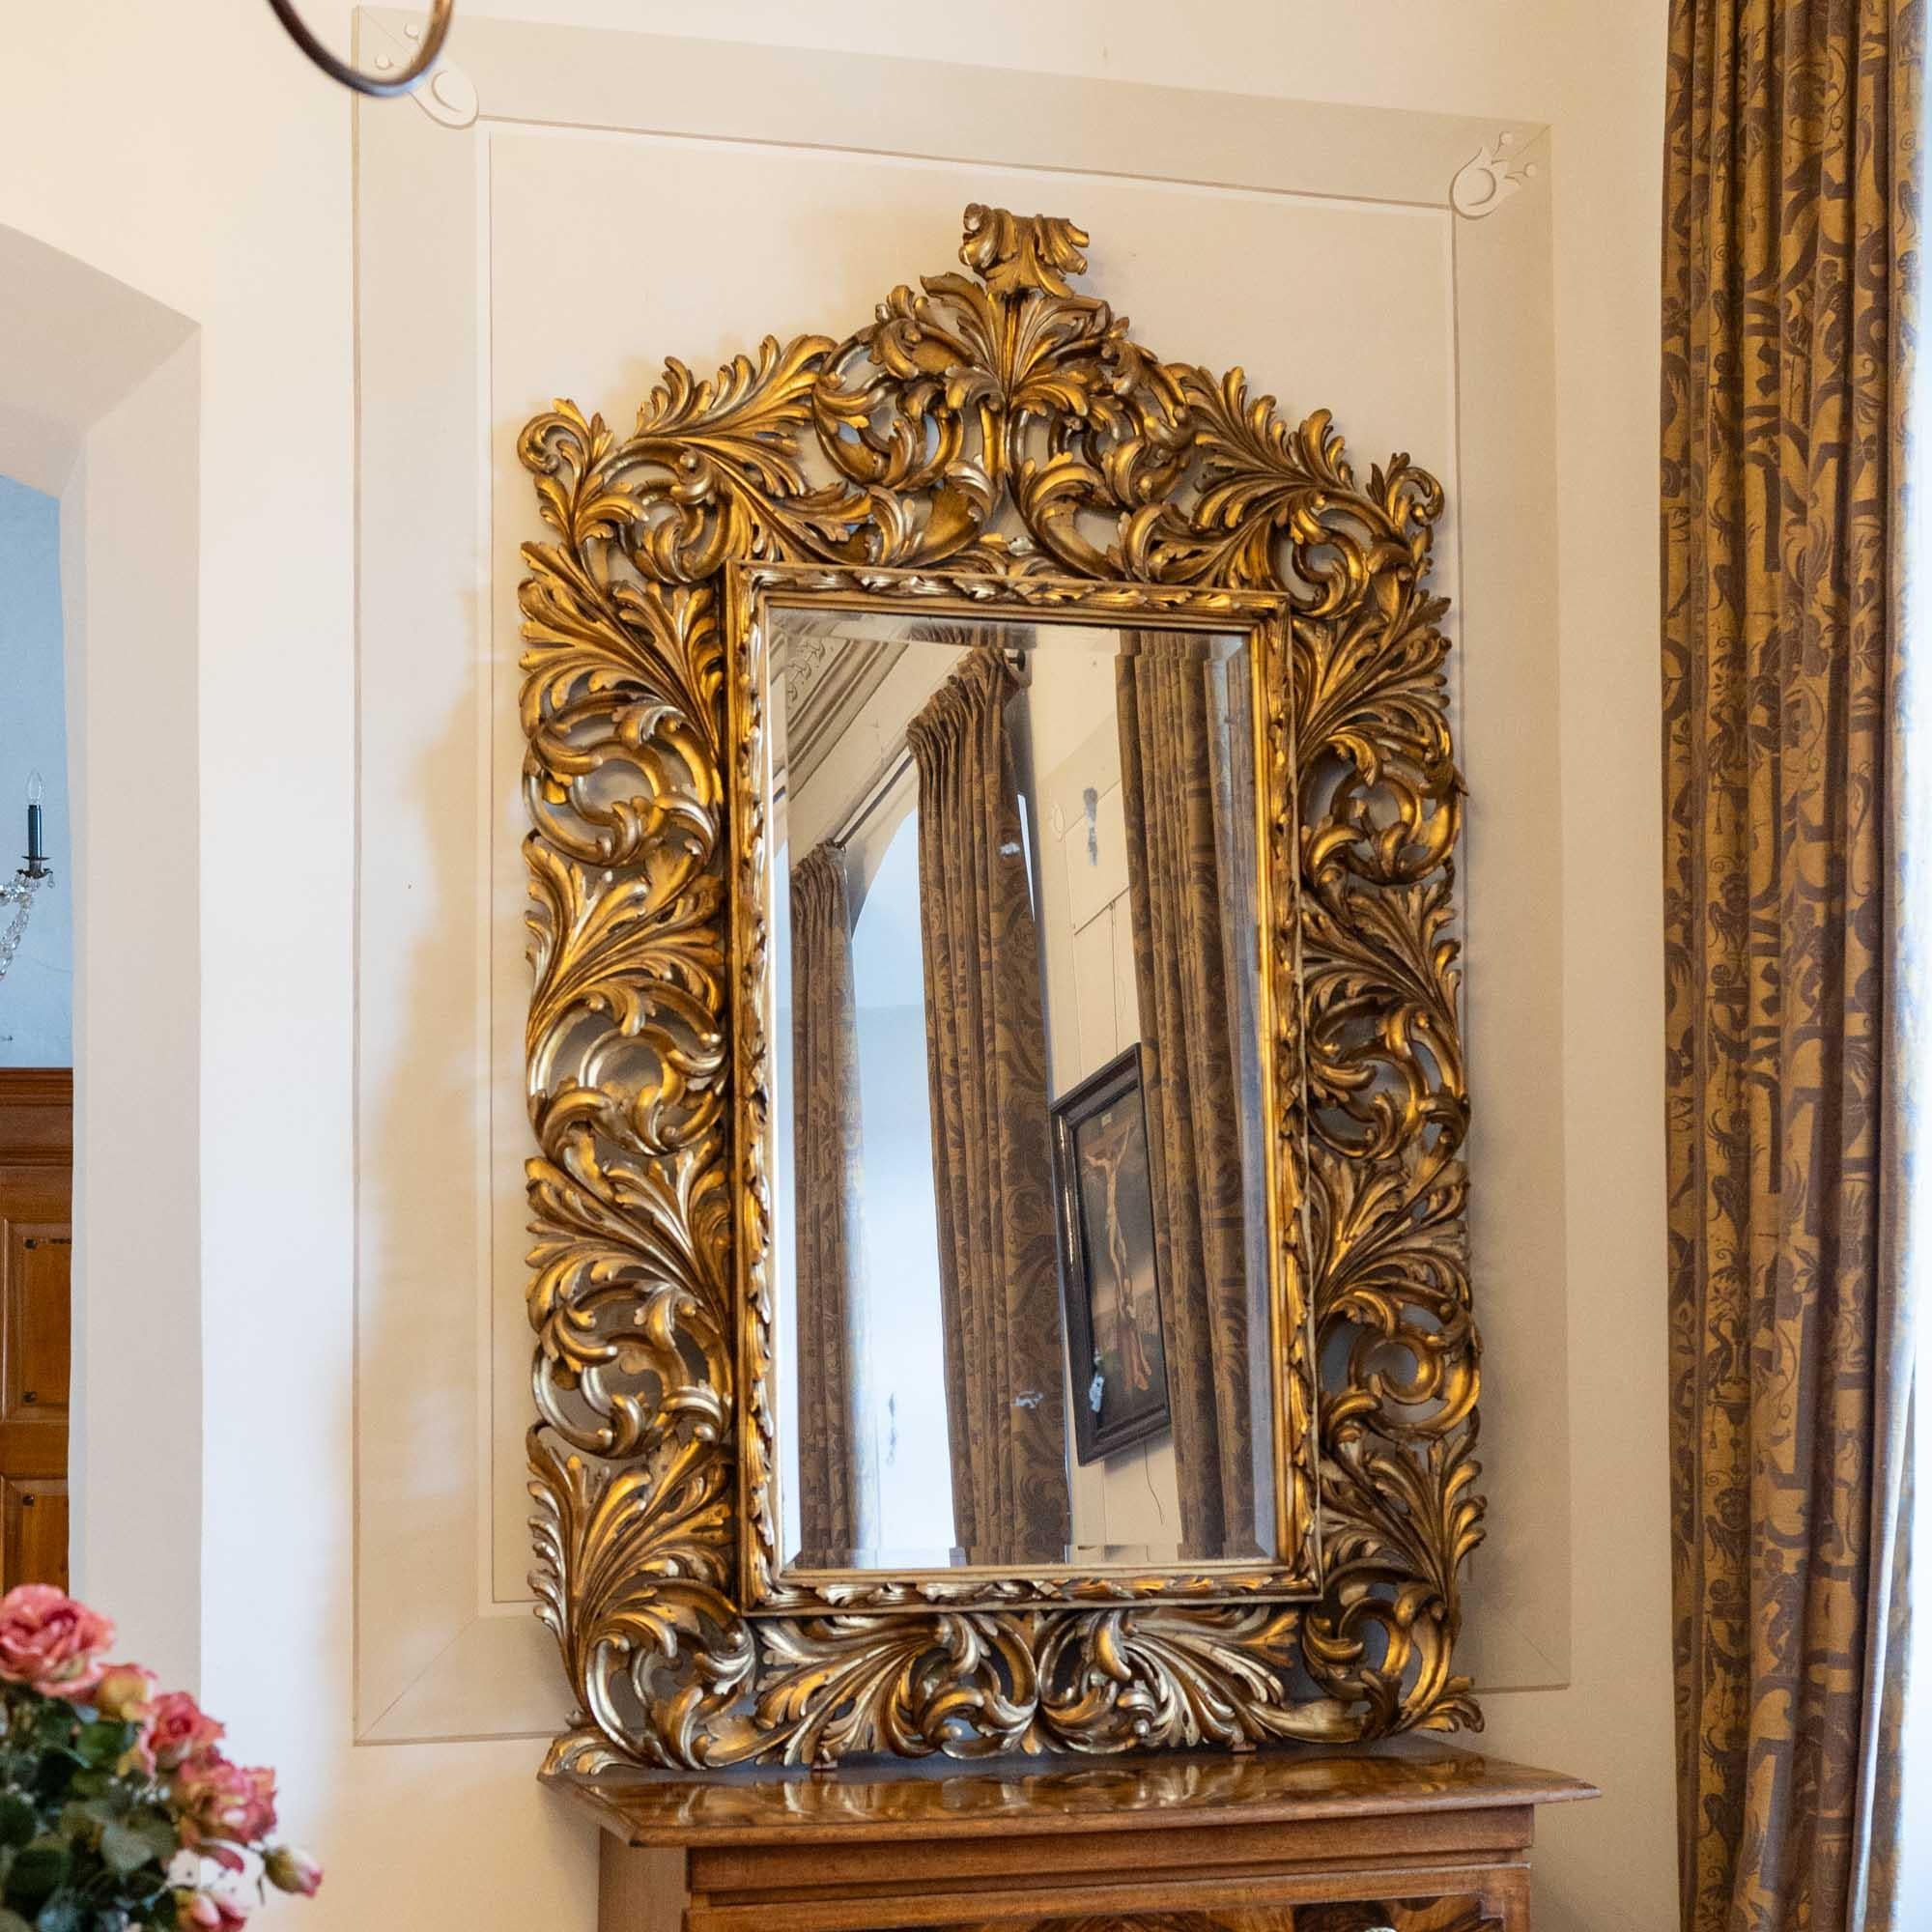 Großer Florentiner Wandspiegel mit altem, teilweise blindem Spiegelglas. Der Wandspiegel ist von einem großen Rahmen aus vergoldetem Holz in Form von durchbrochenen Ranken oder Blattornamenten umgeben.